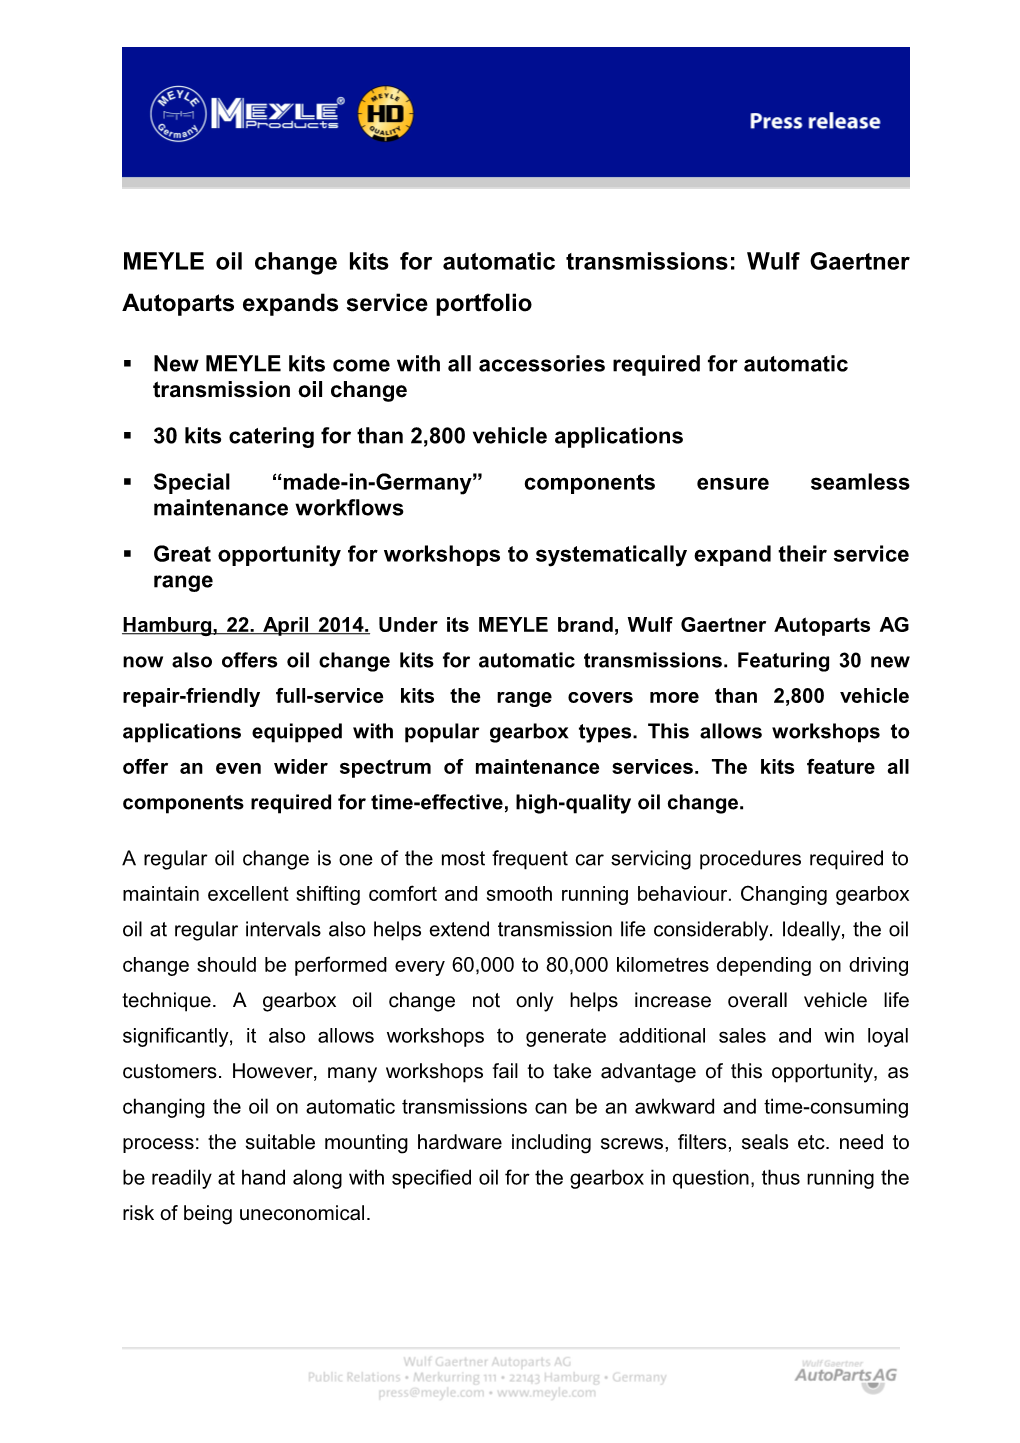 MEYLE - Wulf Gaertner Autoparts AG s3